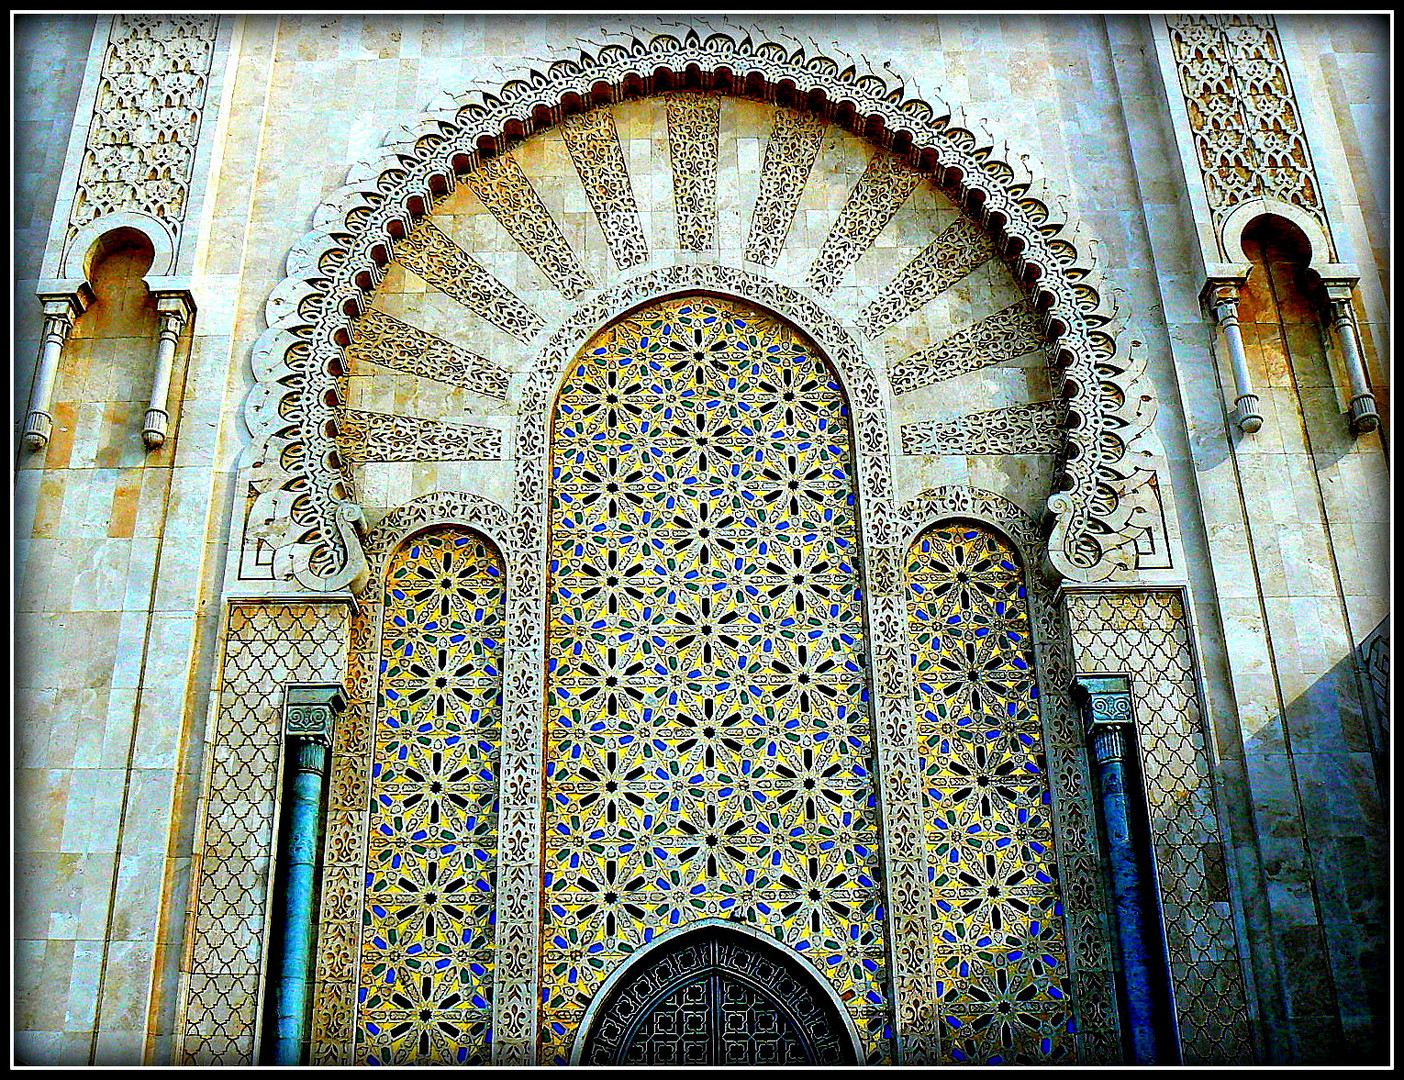 CROISIERE - Escale au Maroc - Mosquée.5 